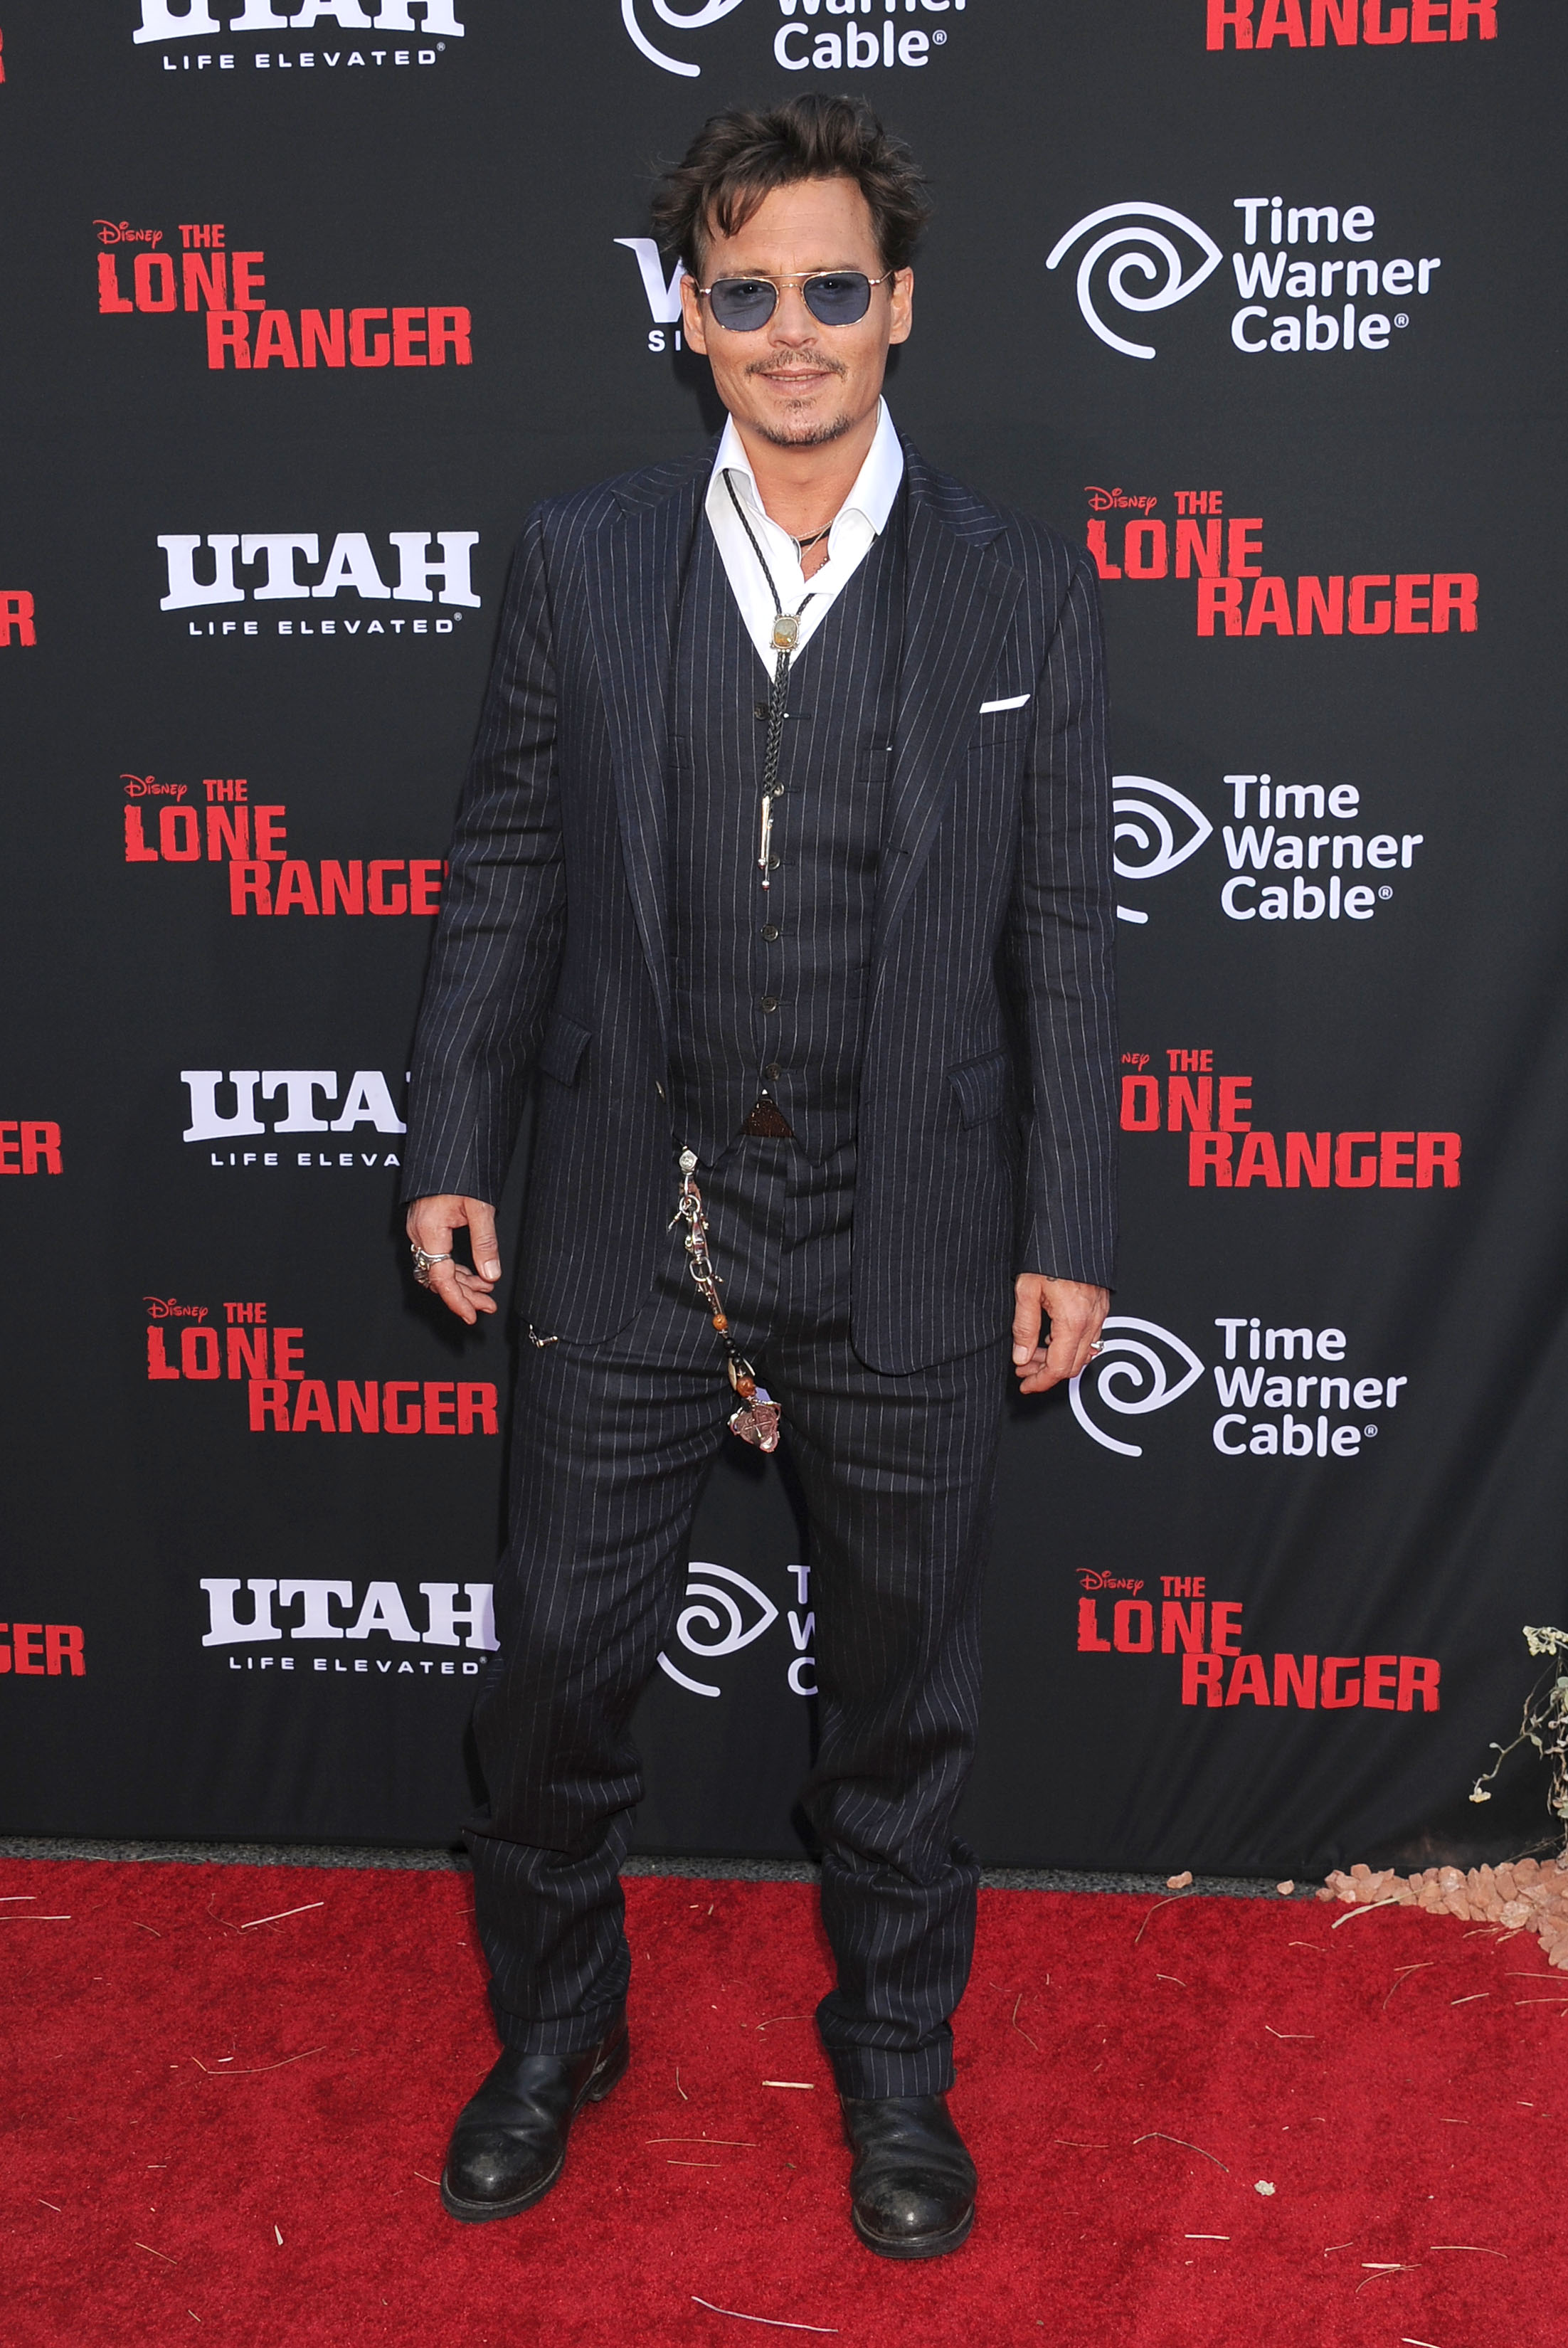 Johnny Depp lors de la première mondiale de "The Lone Ranger" à Anaheim, Californie, le 22 juin 2013 | Source : Getty Images